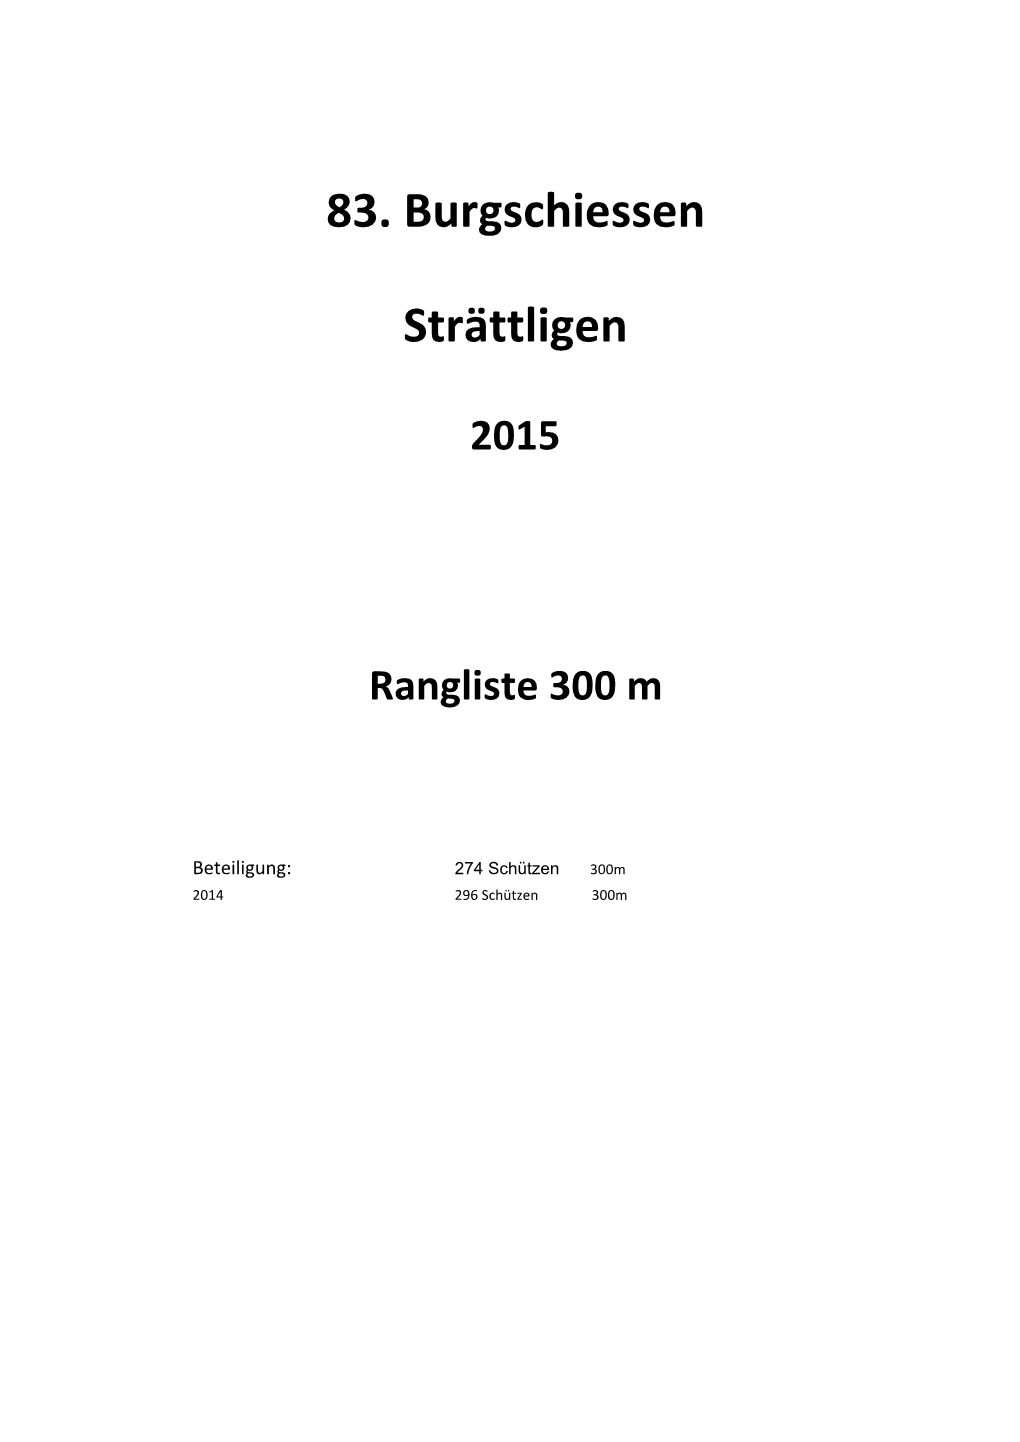 Rangliste Burgschiessen 2015